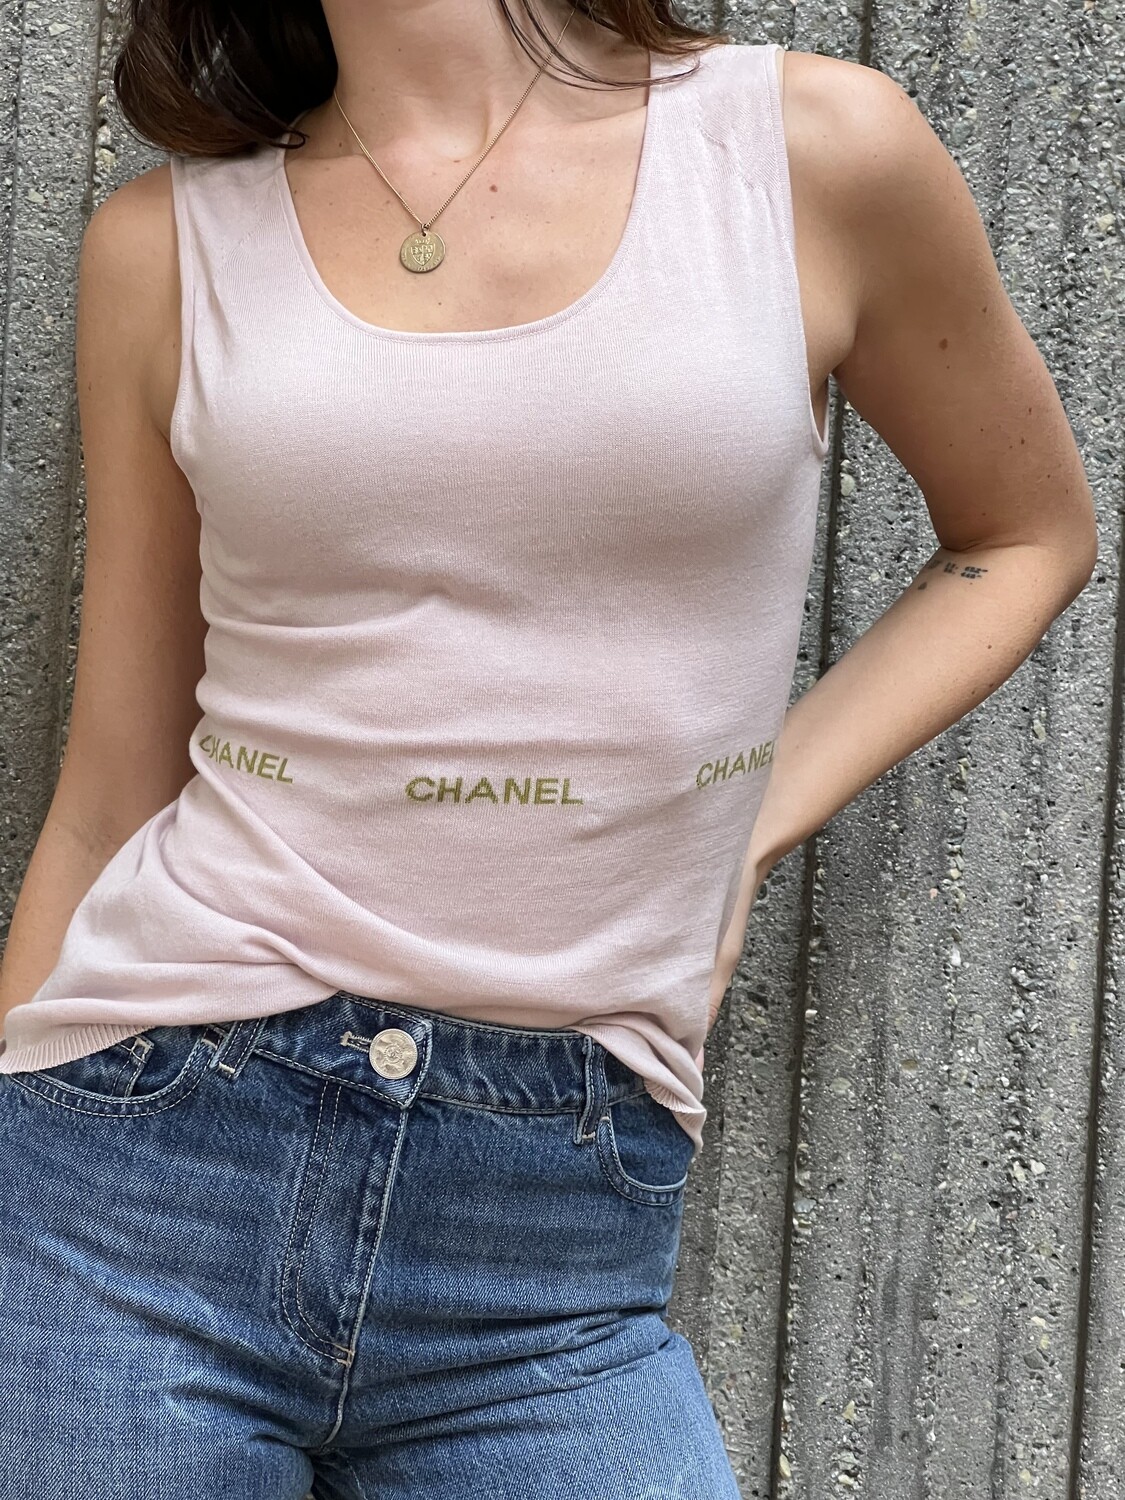 Chanel cc logo camellia flower cotton vest summer tank tops clothes women  beige